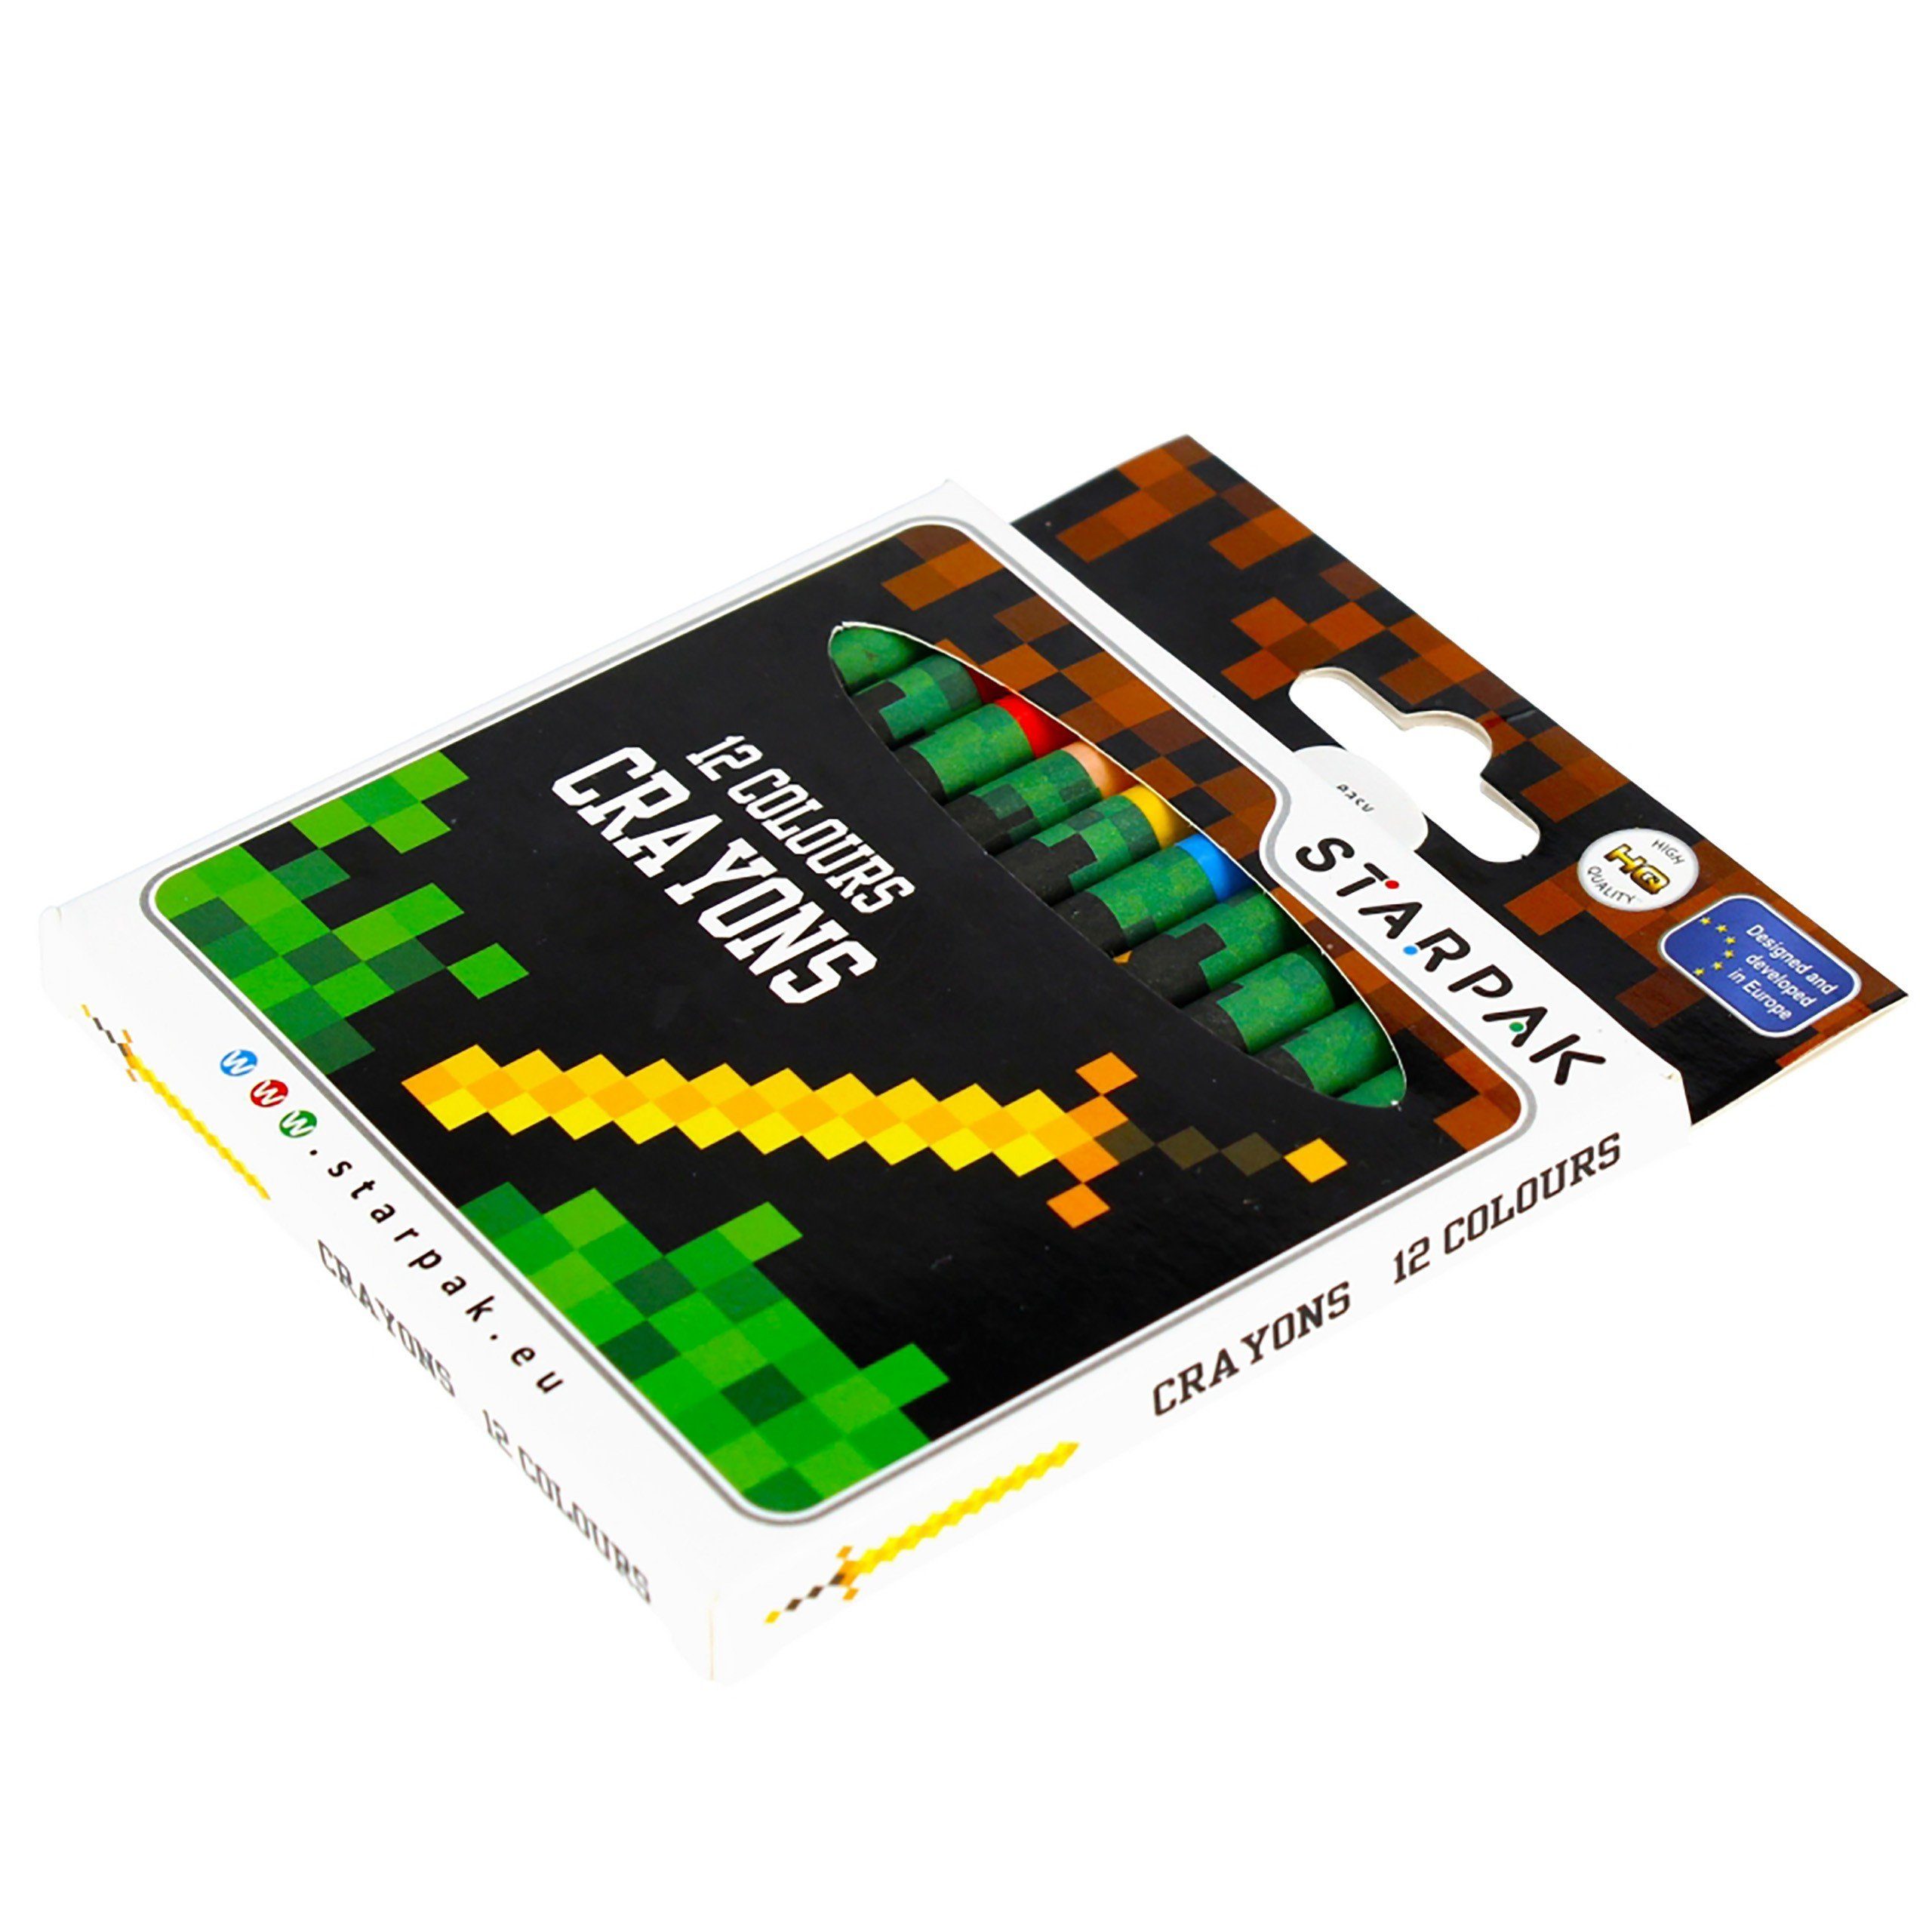 Pixel Röhrenmäppchen GRATIS Game + Federmäppchen Wachsmalstifte Sarcia.eu